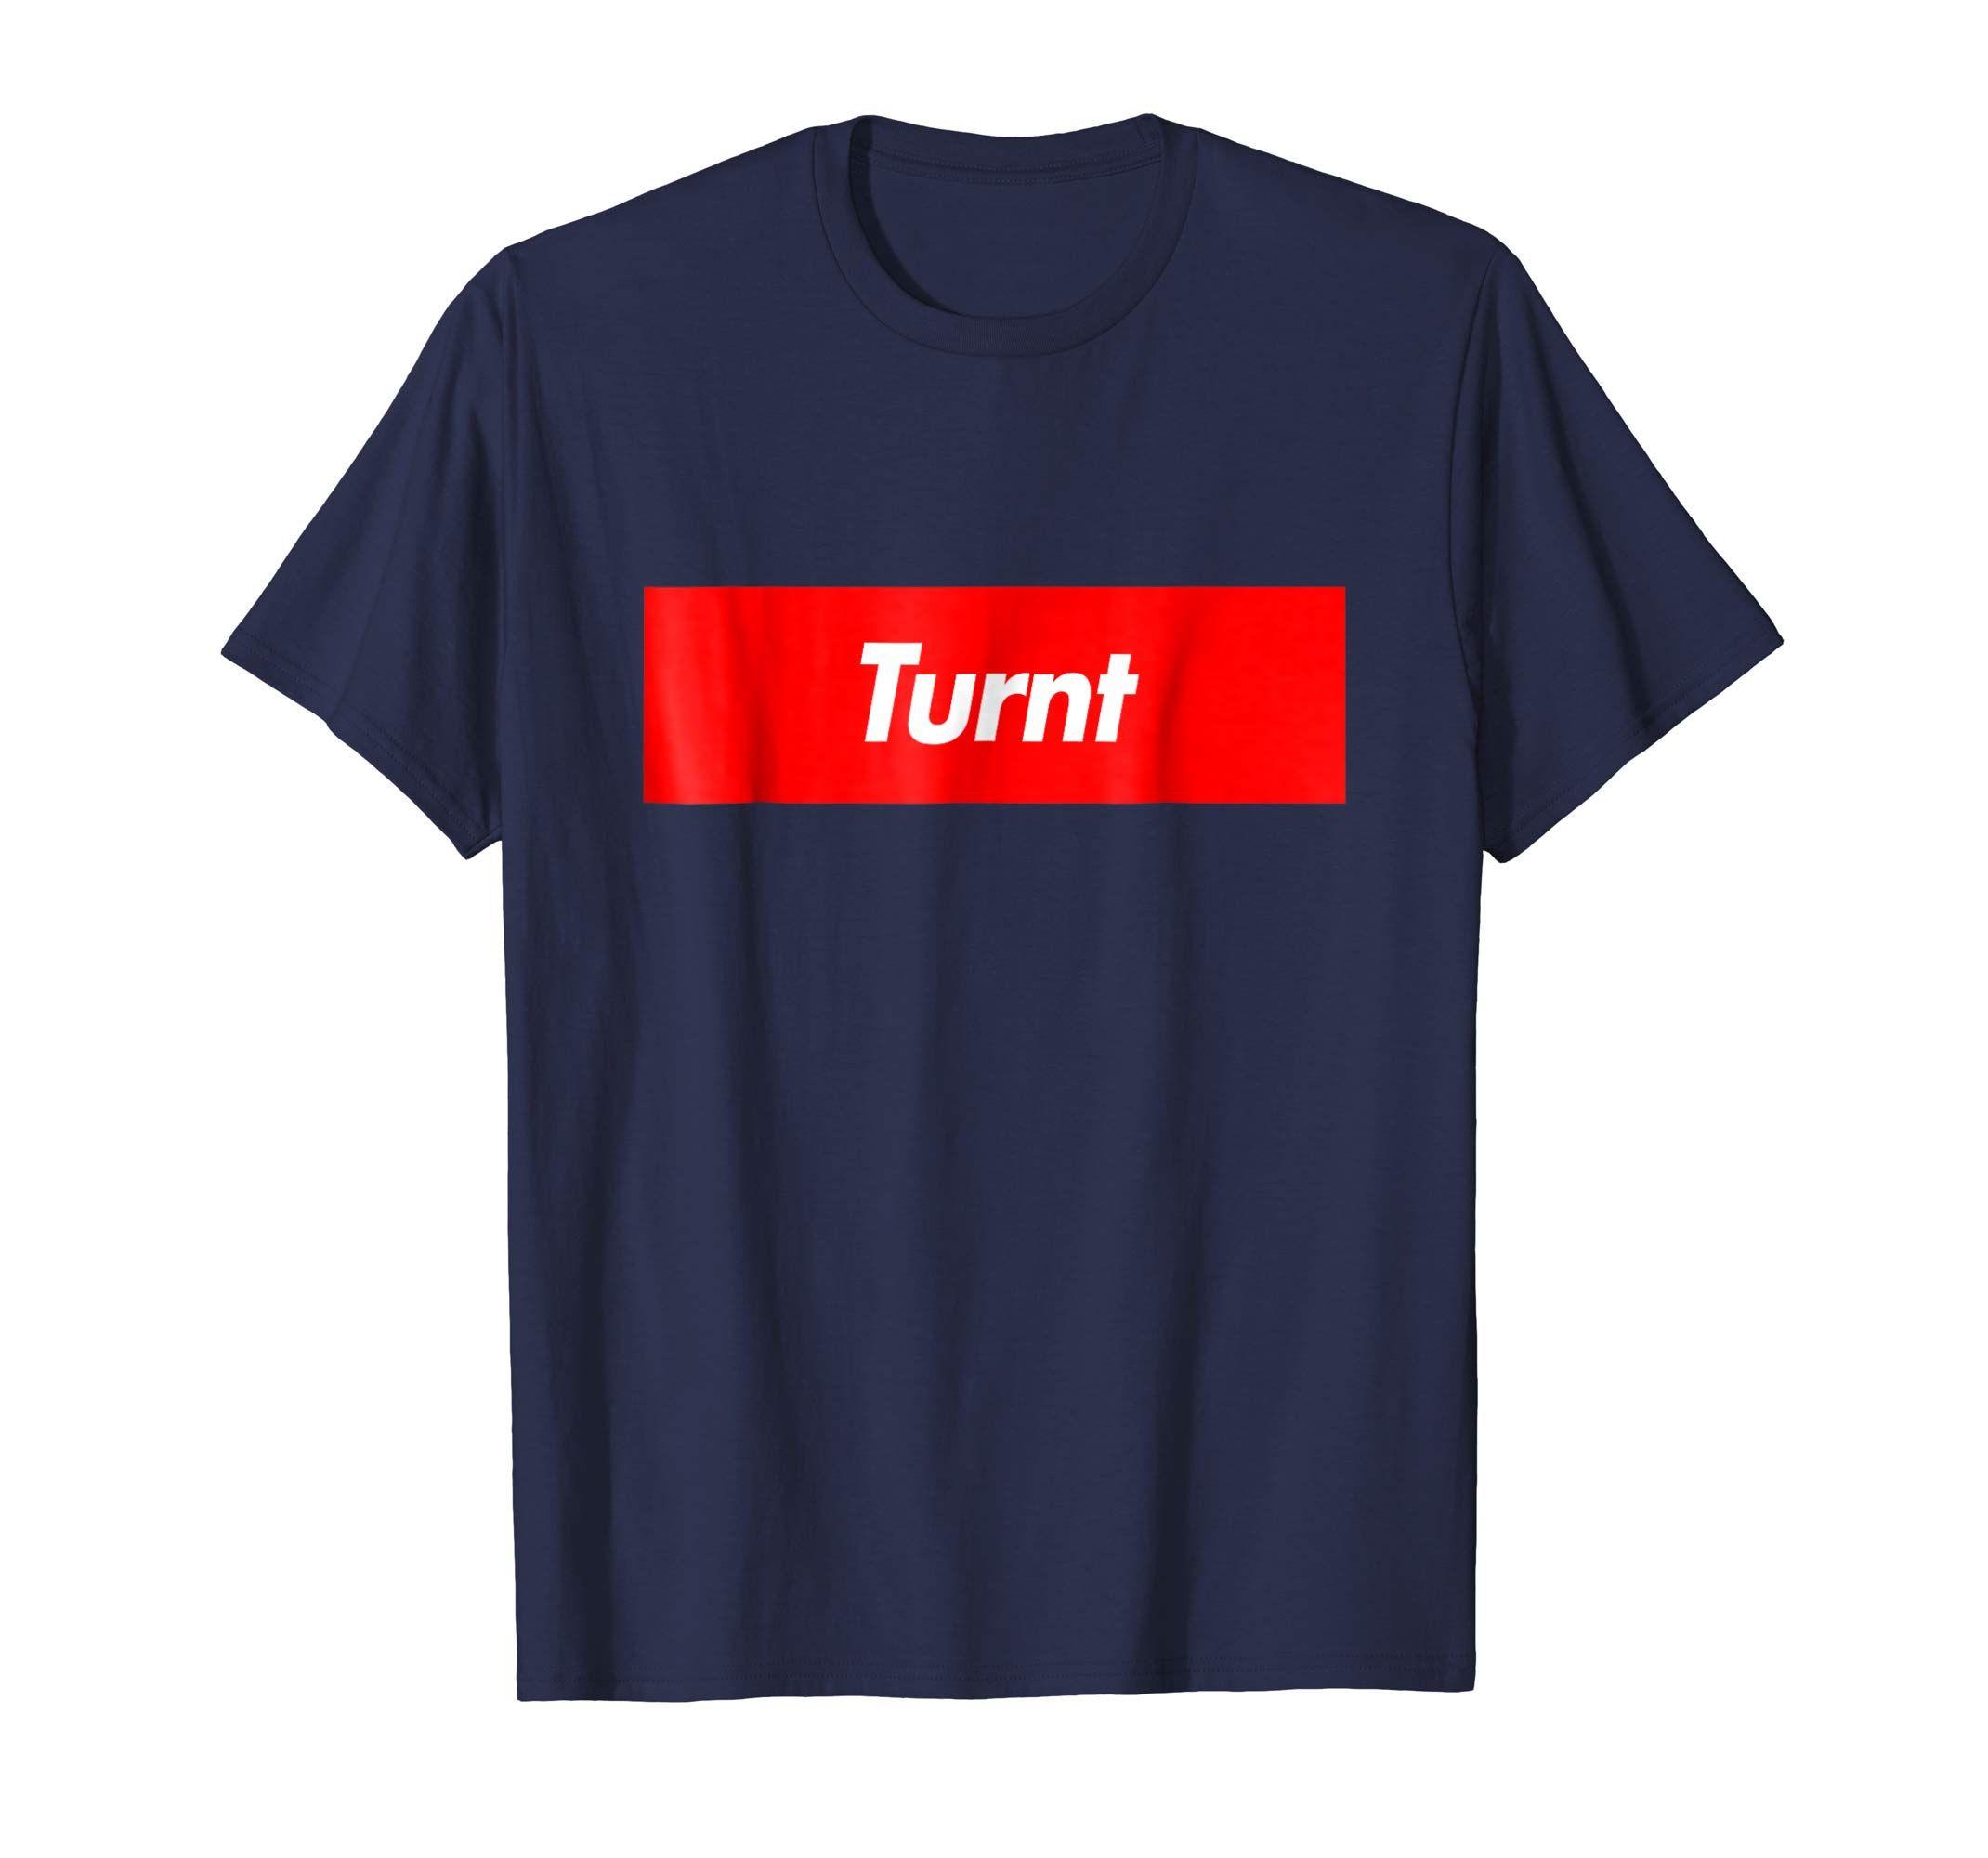 Turnt Logo - Amazon.com: Turnt Box Logo Slogan Funny T-Shirt: Clothing